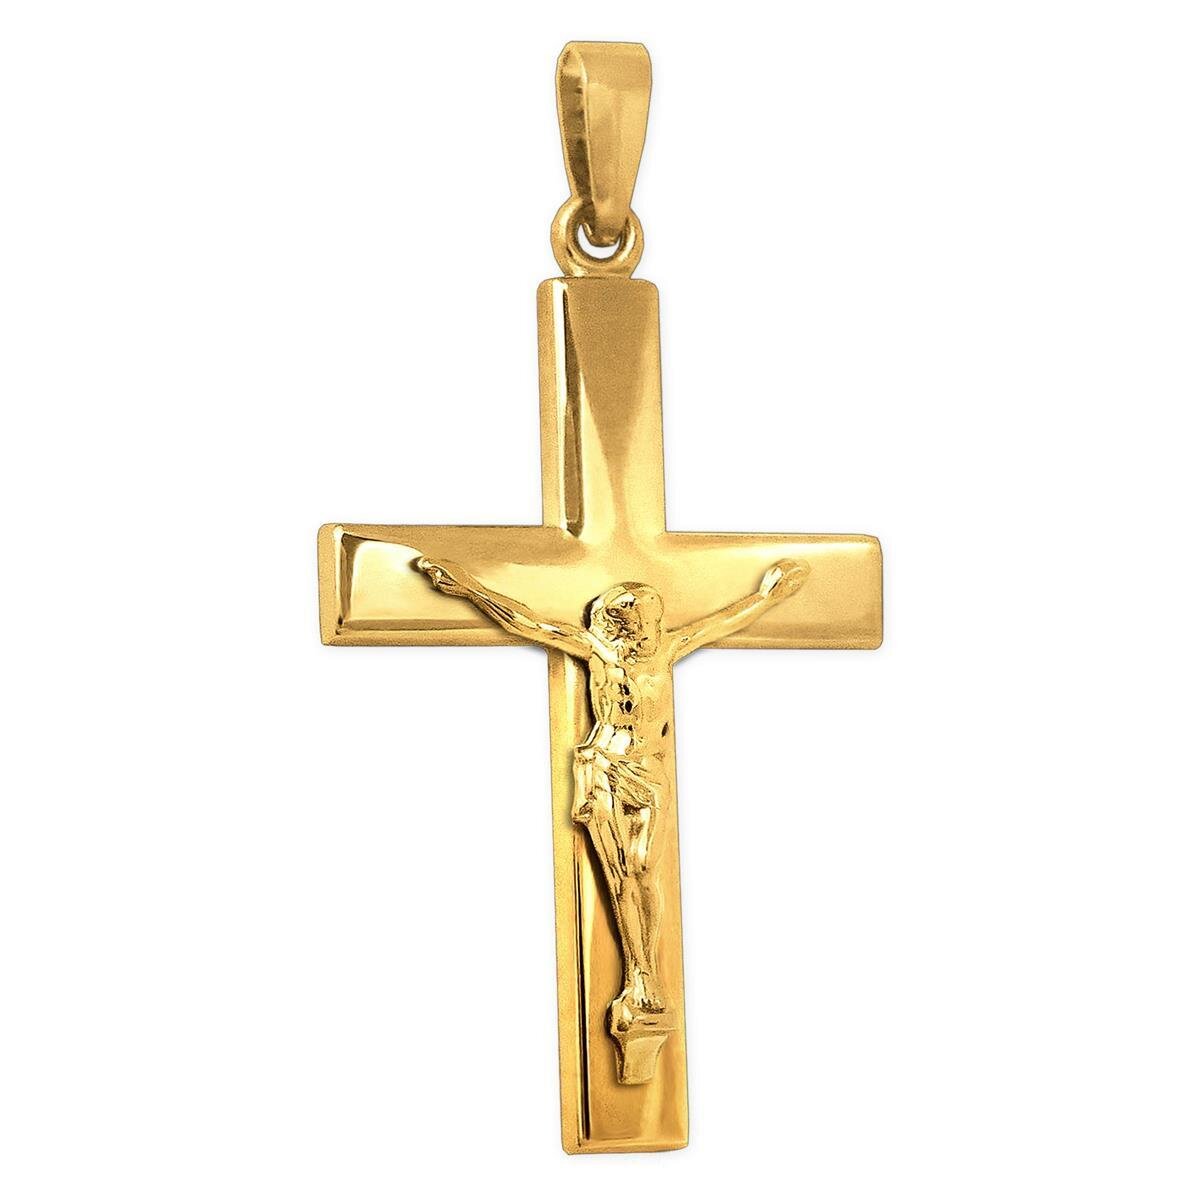 Goldenes Jesuskreuz 41 mm breite Ballken schlichte Form Echt Gold 333